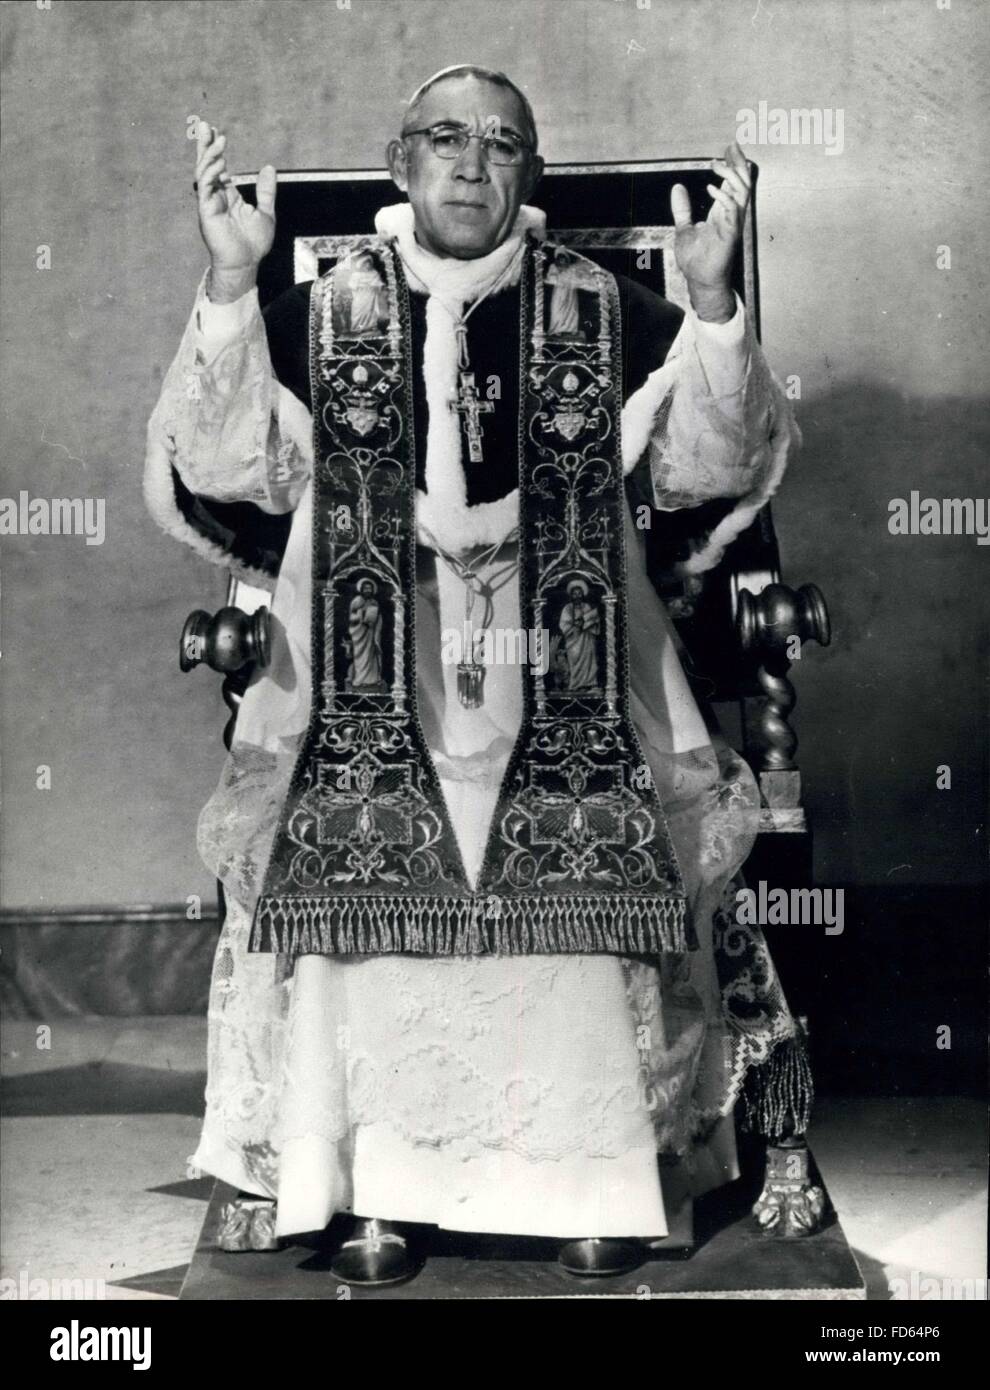 1968 - Schauspieler Anthony Quinn den Mann in Roben von reinem weiß sitzt er behäbig tragen das weiße Gewand eines Papstes. Der Mann auf dem Bild sieht jeder Zoll ein Führer der Kirche von Rom. Aber das Gesicht ist unverkennbar, Schauspieler Anthony Quinn ist für seine Rolle in dem Film den Schuhen des Fischers die Geschichte von einem russischen Erzbischof, der Papst wird gekleidet. Der Film basiert auf Morris WestÃ s Bestseller. © Keystone Bilder USA/ZUMAPRESS.com/Alamy Live-Nachrichten Stockfoto